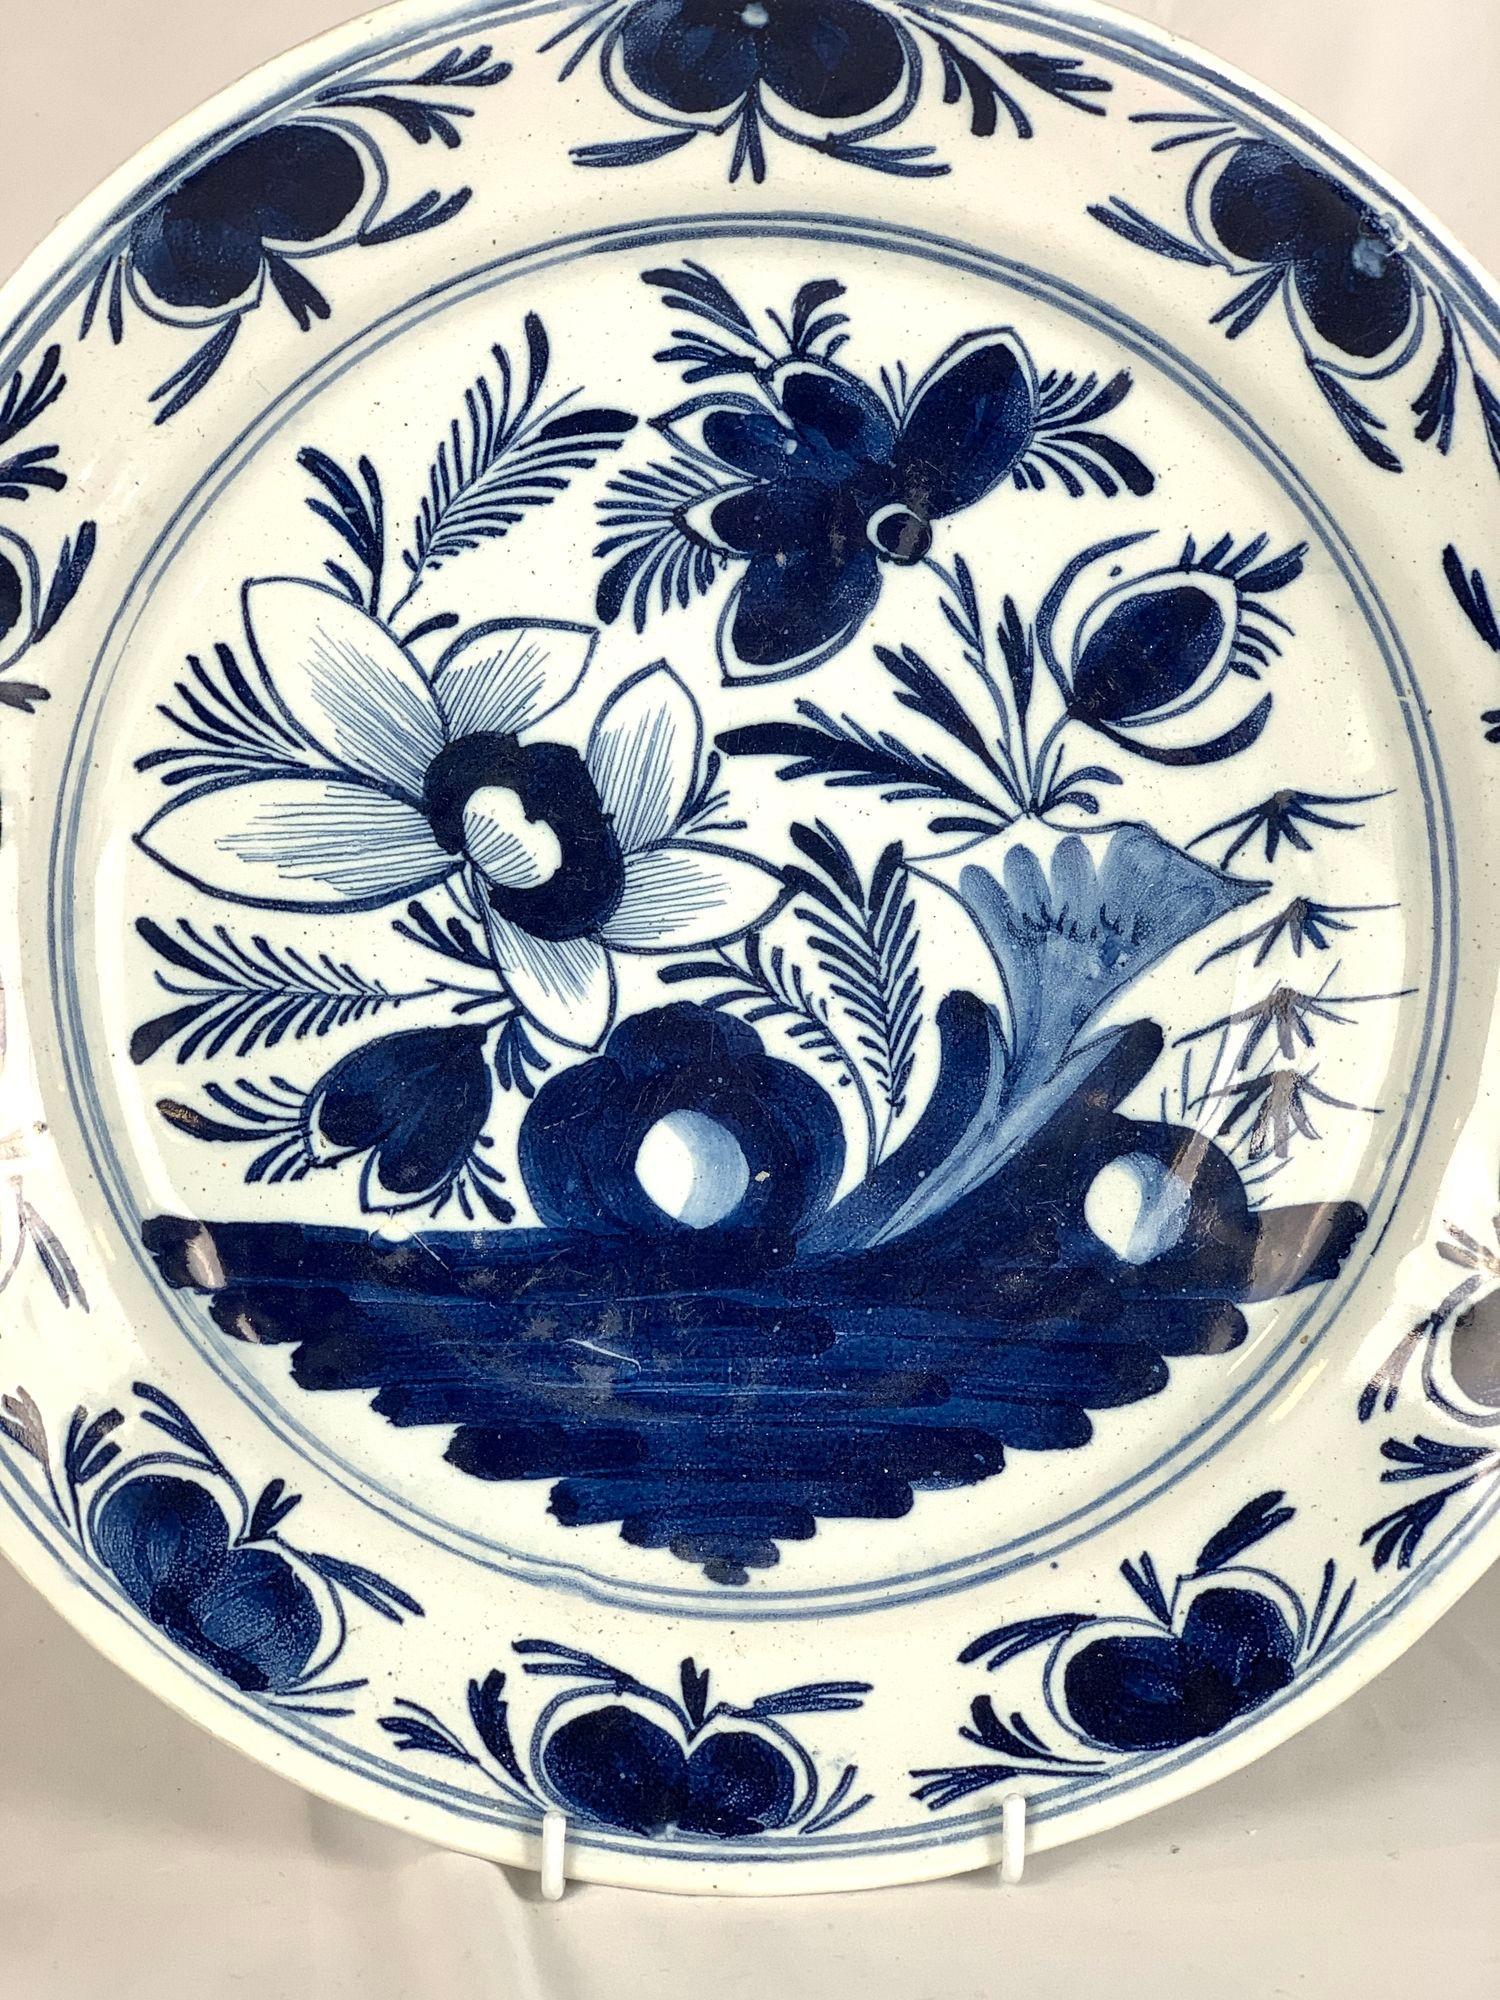 Dieses blau-weiße Delft-Geschirr wurde in den Niederlanden um 1800 handbemalt und zeigt eine Gartenszene mit blühenden Pfingstrosen.
Wir sehen blühende Blumen, Knospen, Blätter und Felsformationen.
Die breite Bordüre zeigt ein schönes, sich